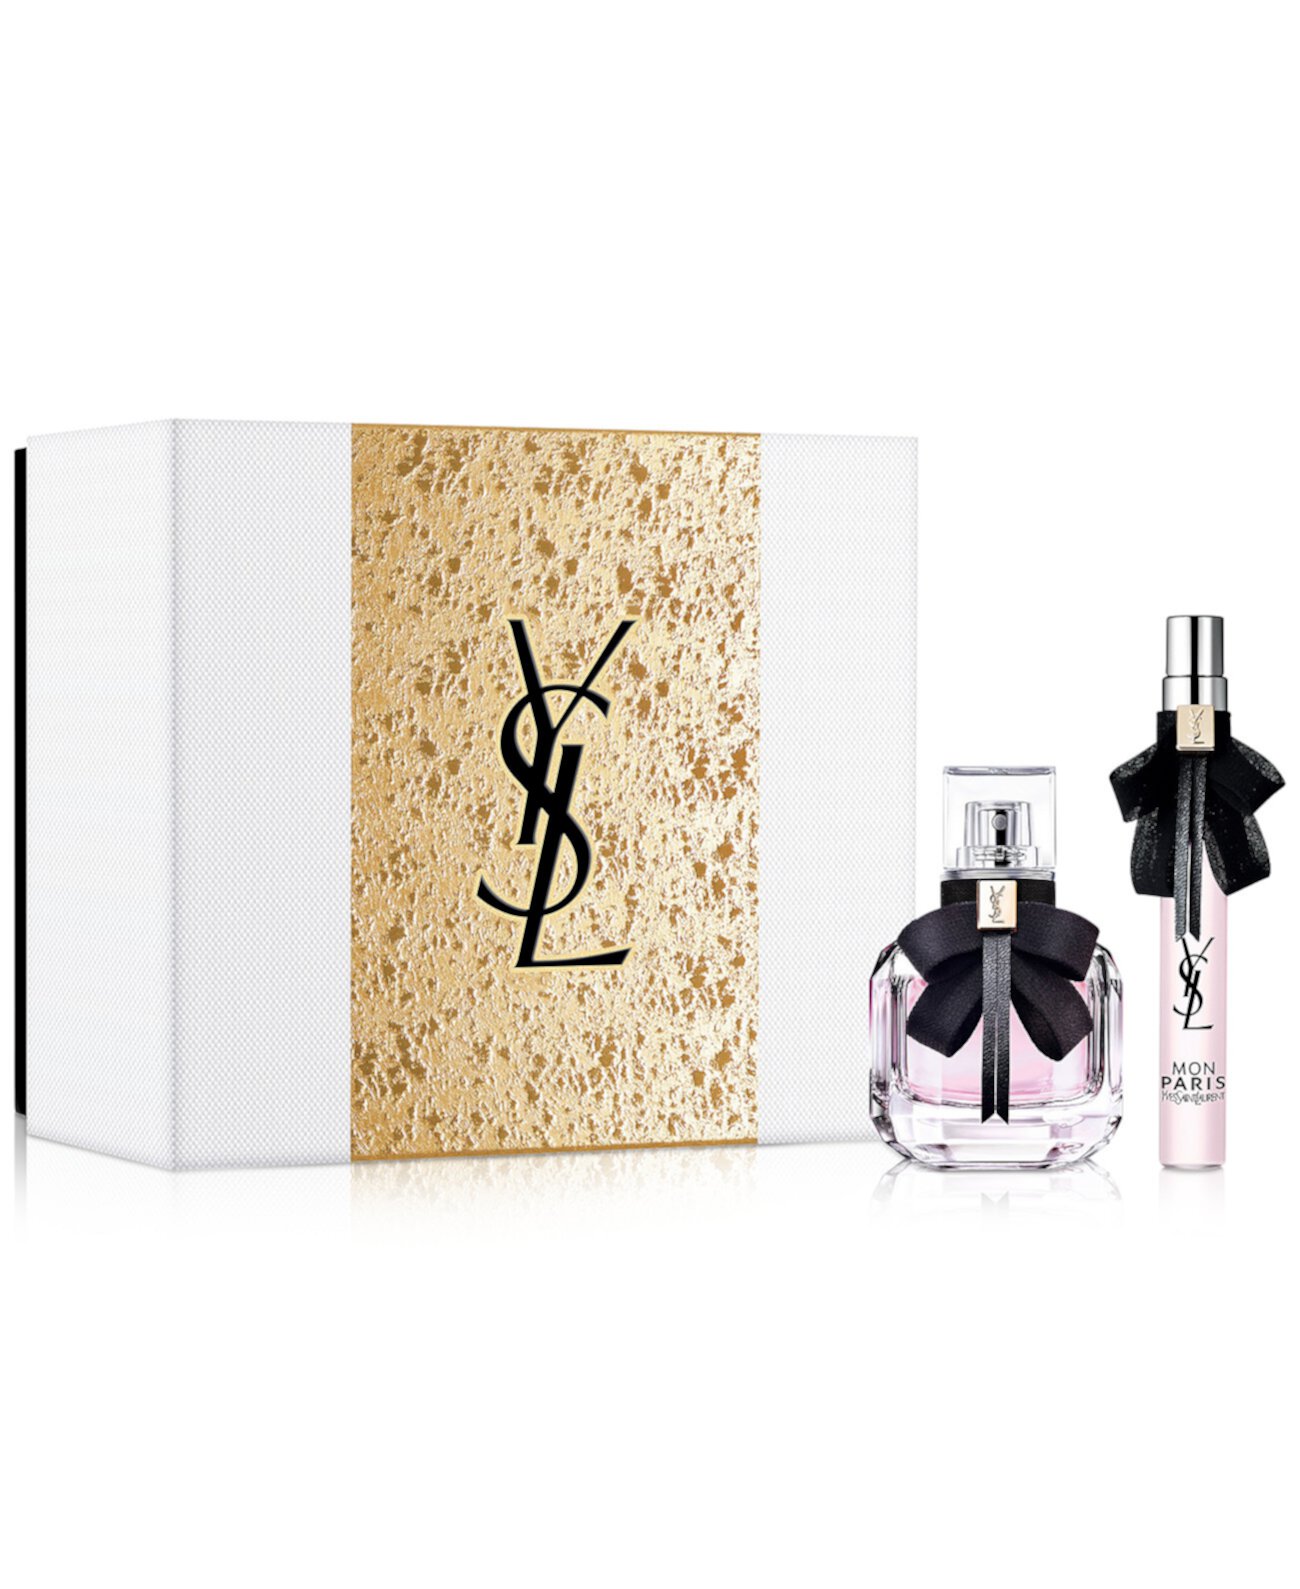 2-шт. Подарочный набор Mon Paris Eau de Parfum Yves Saint Laurent